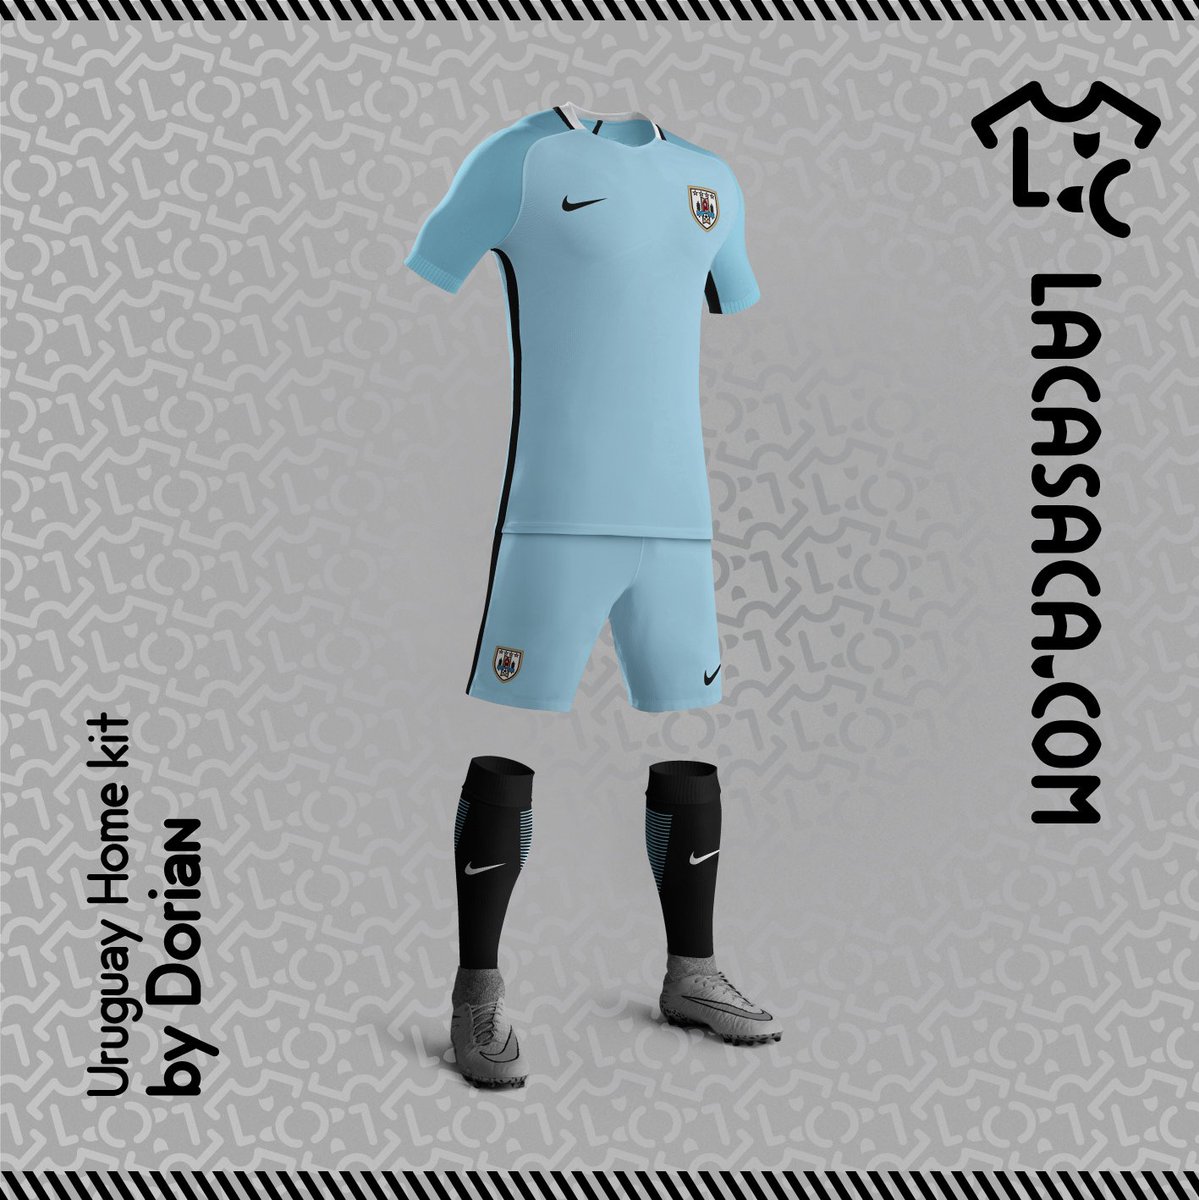 OVACIÓN Twitter वर: "Así son otras camisetas de de Nike: ¿Cómo sería la Uruguay? GALERÍA▻https://t.co/t6hNkT9KE2◅ https://t.co/x9rXubPuWu" / Twitter